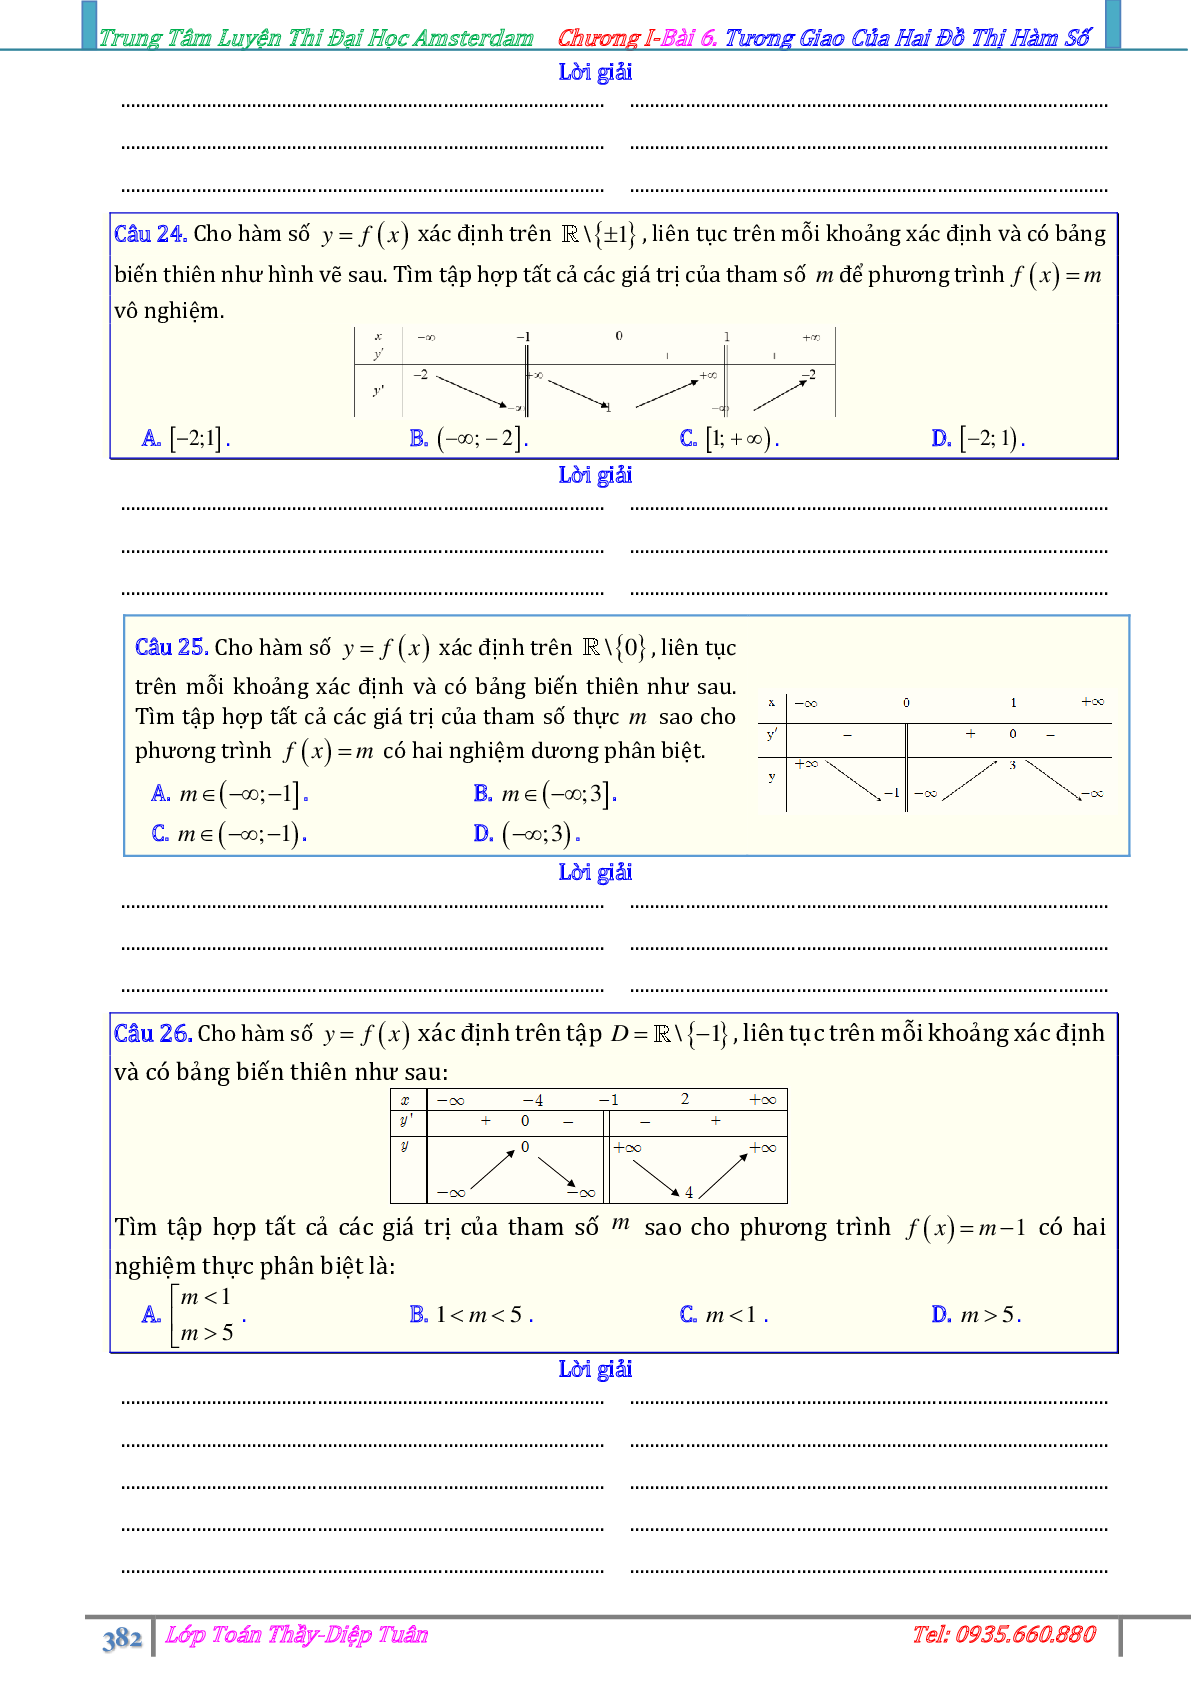 Phương pháp giải Sự tương giao giữa hai đồ thị hàm số 2023 (lý thuyết và bài tập) (trang 9)